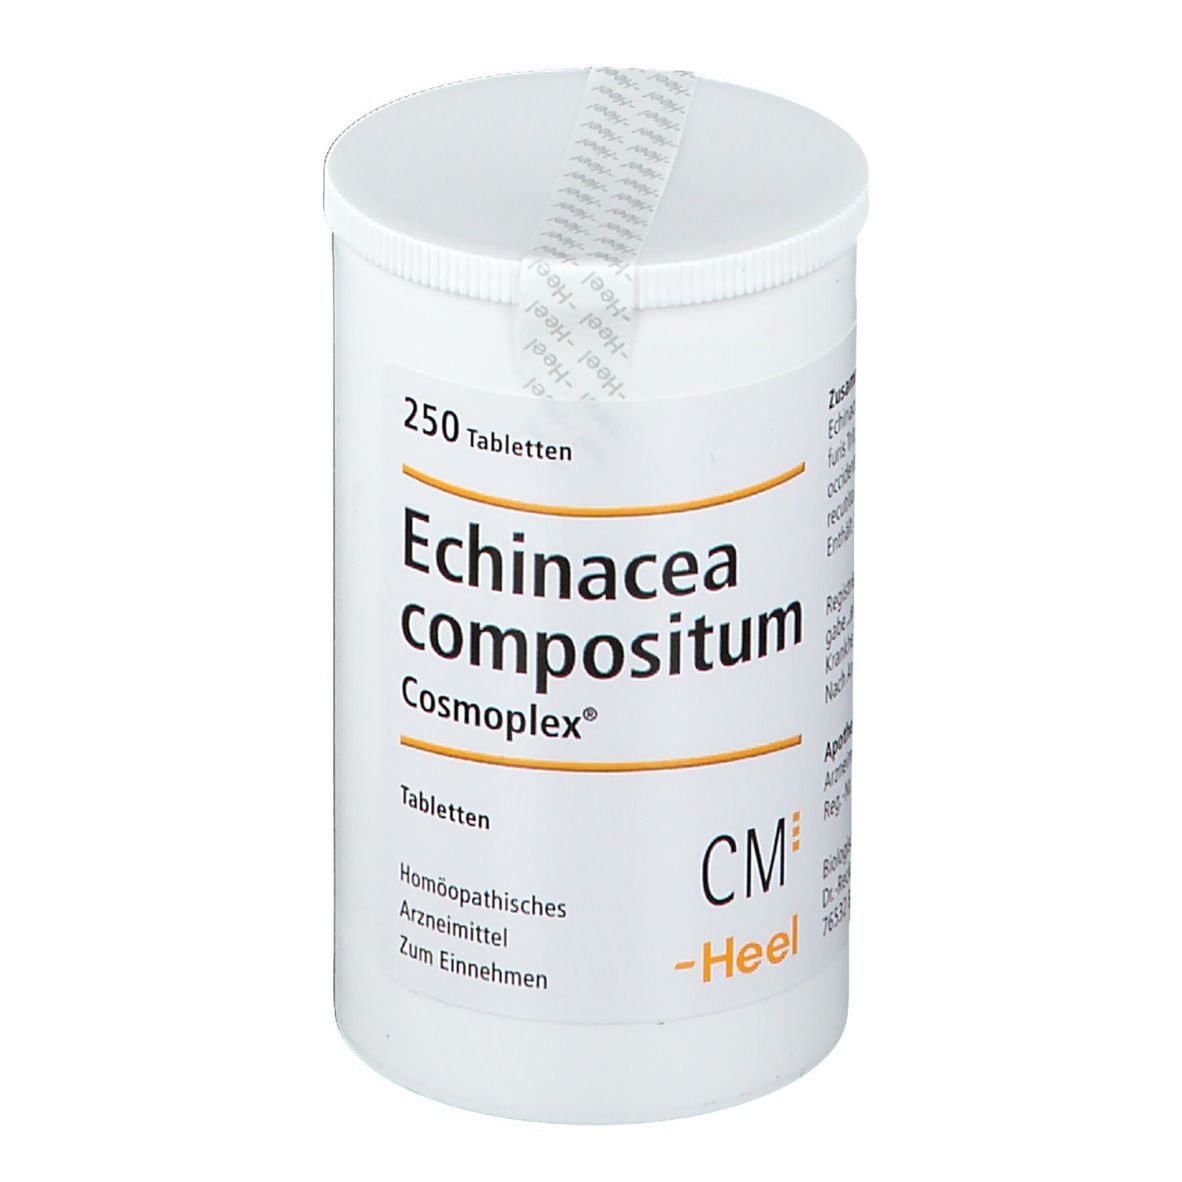 Echinacea compositum Cosmoplex® Tabletten